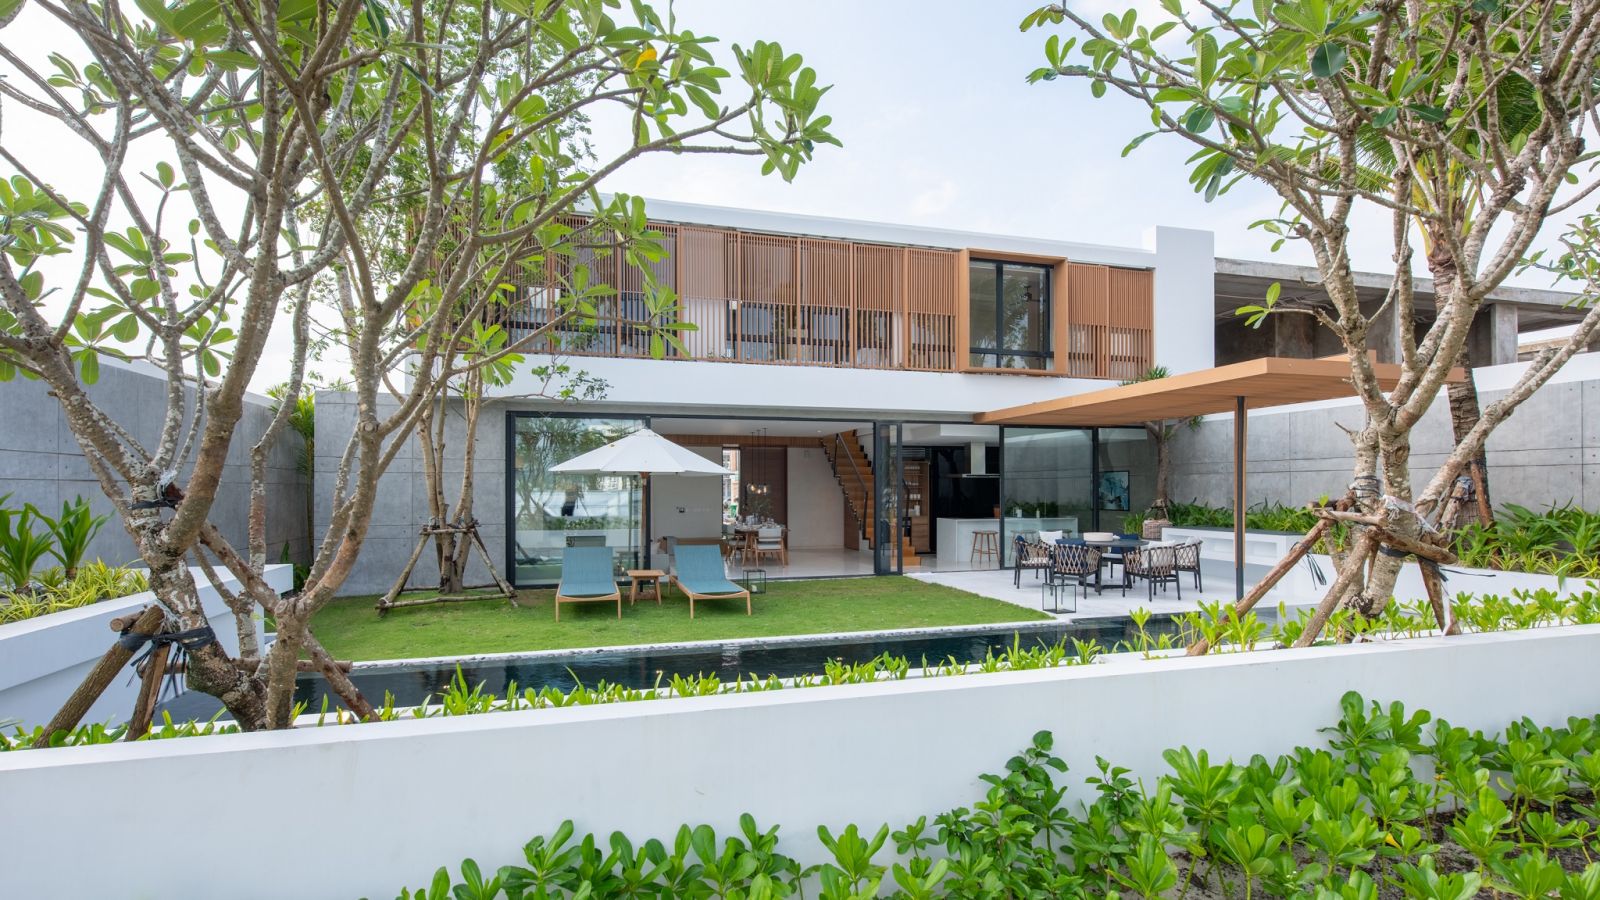 Phu Quoc Marina - Mô hình khu phức hợp nghỉ dưỡng và giải trí quốc tế tiên phong tại Phú Quốc